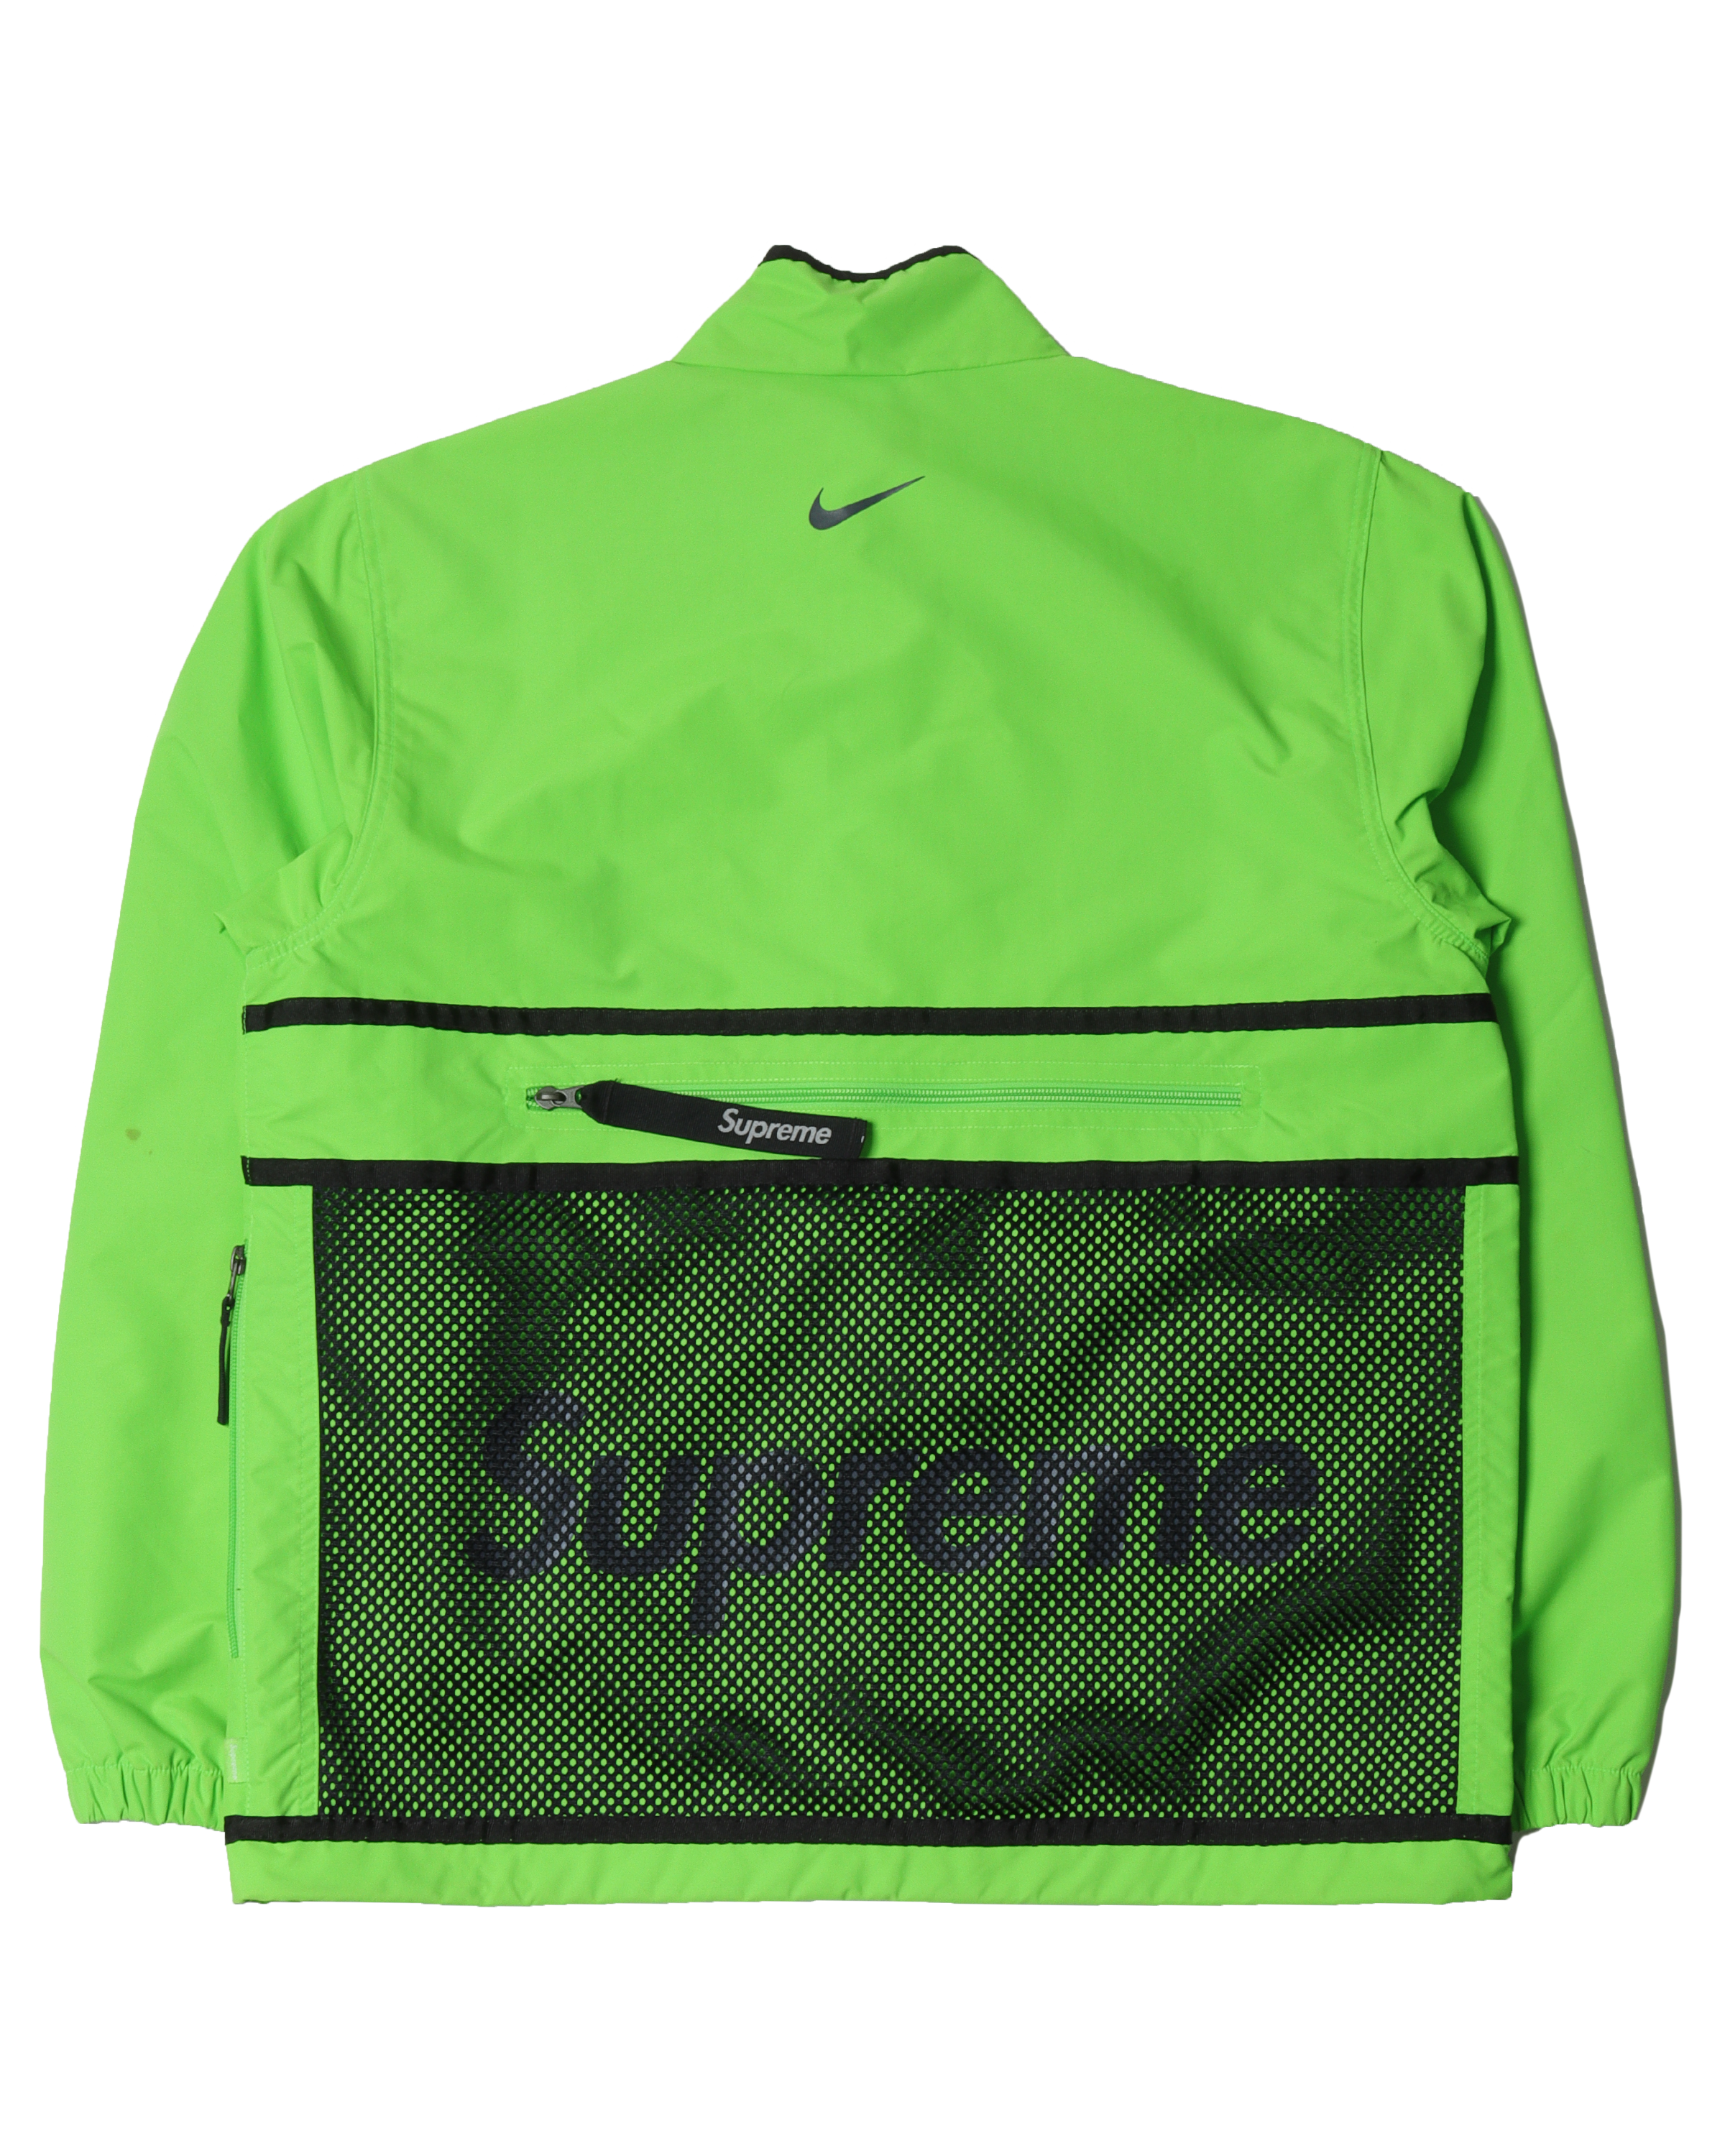 Nike Green Track Jacket